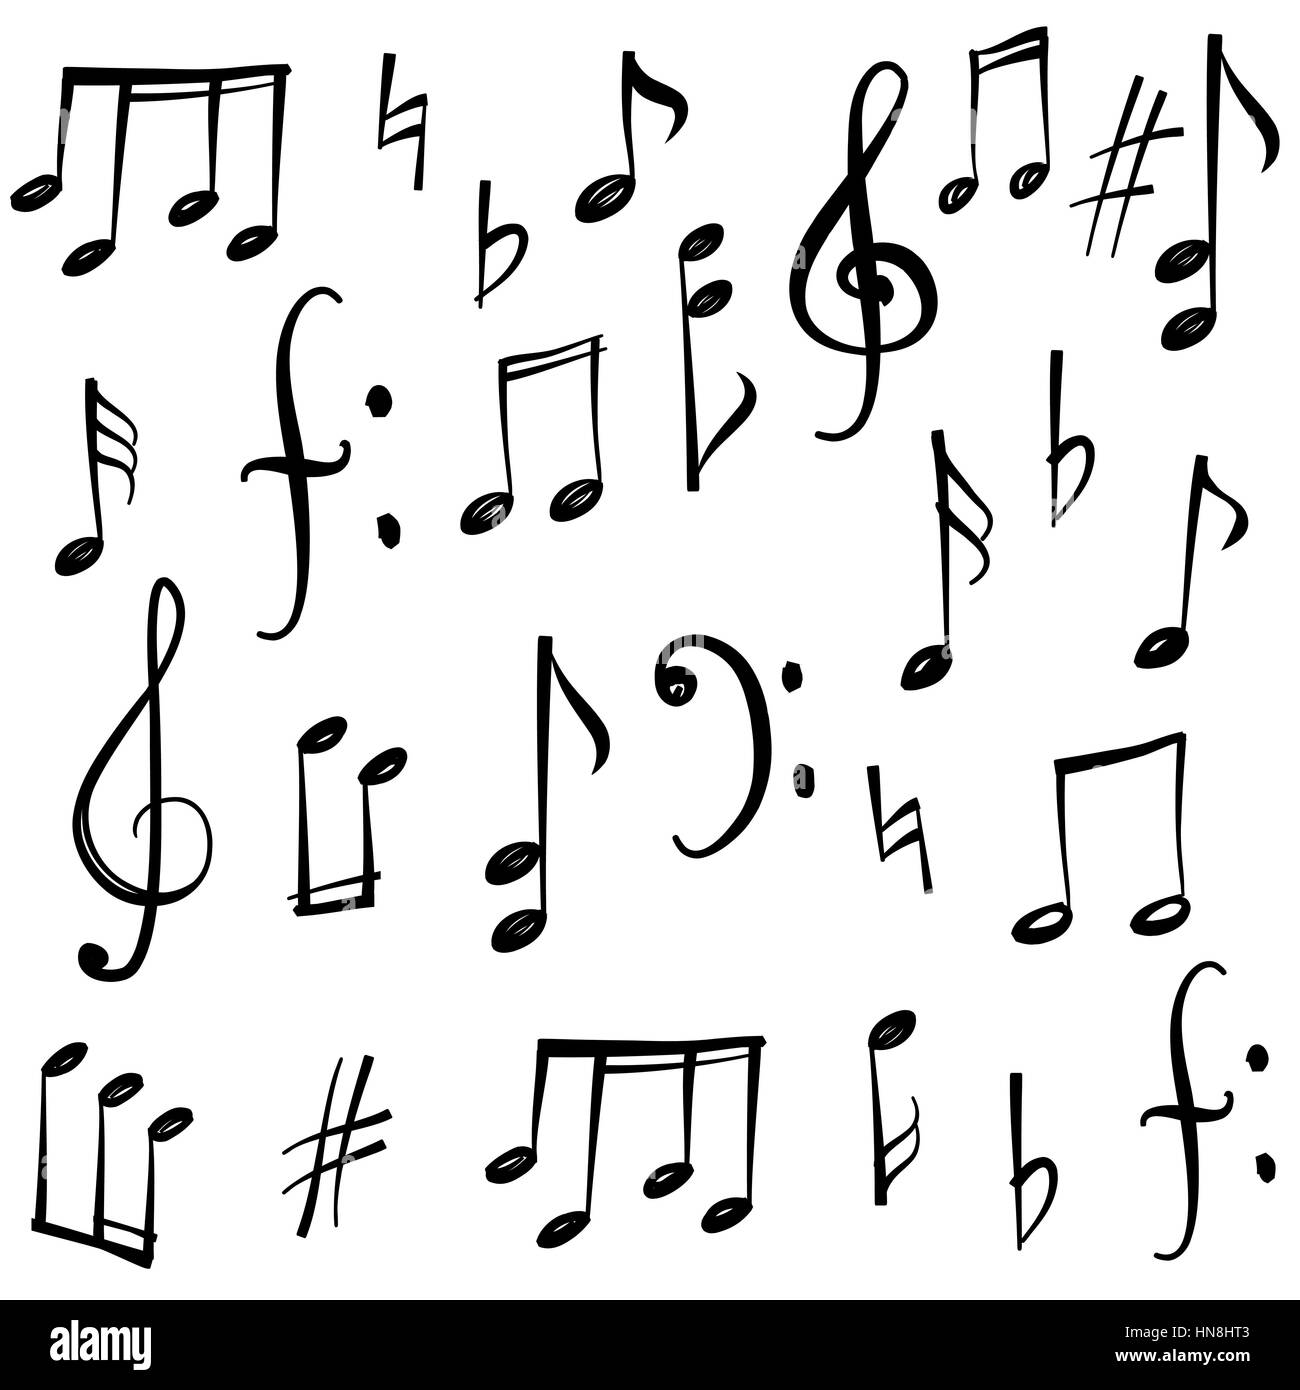 Noten und Zeichen gesetzt. Hand gezeichnet Musik Symbol Skizze Sammlung Stock Vektor